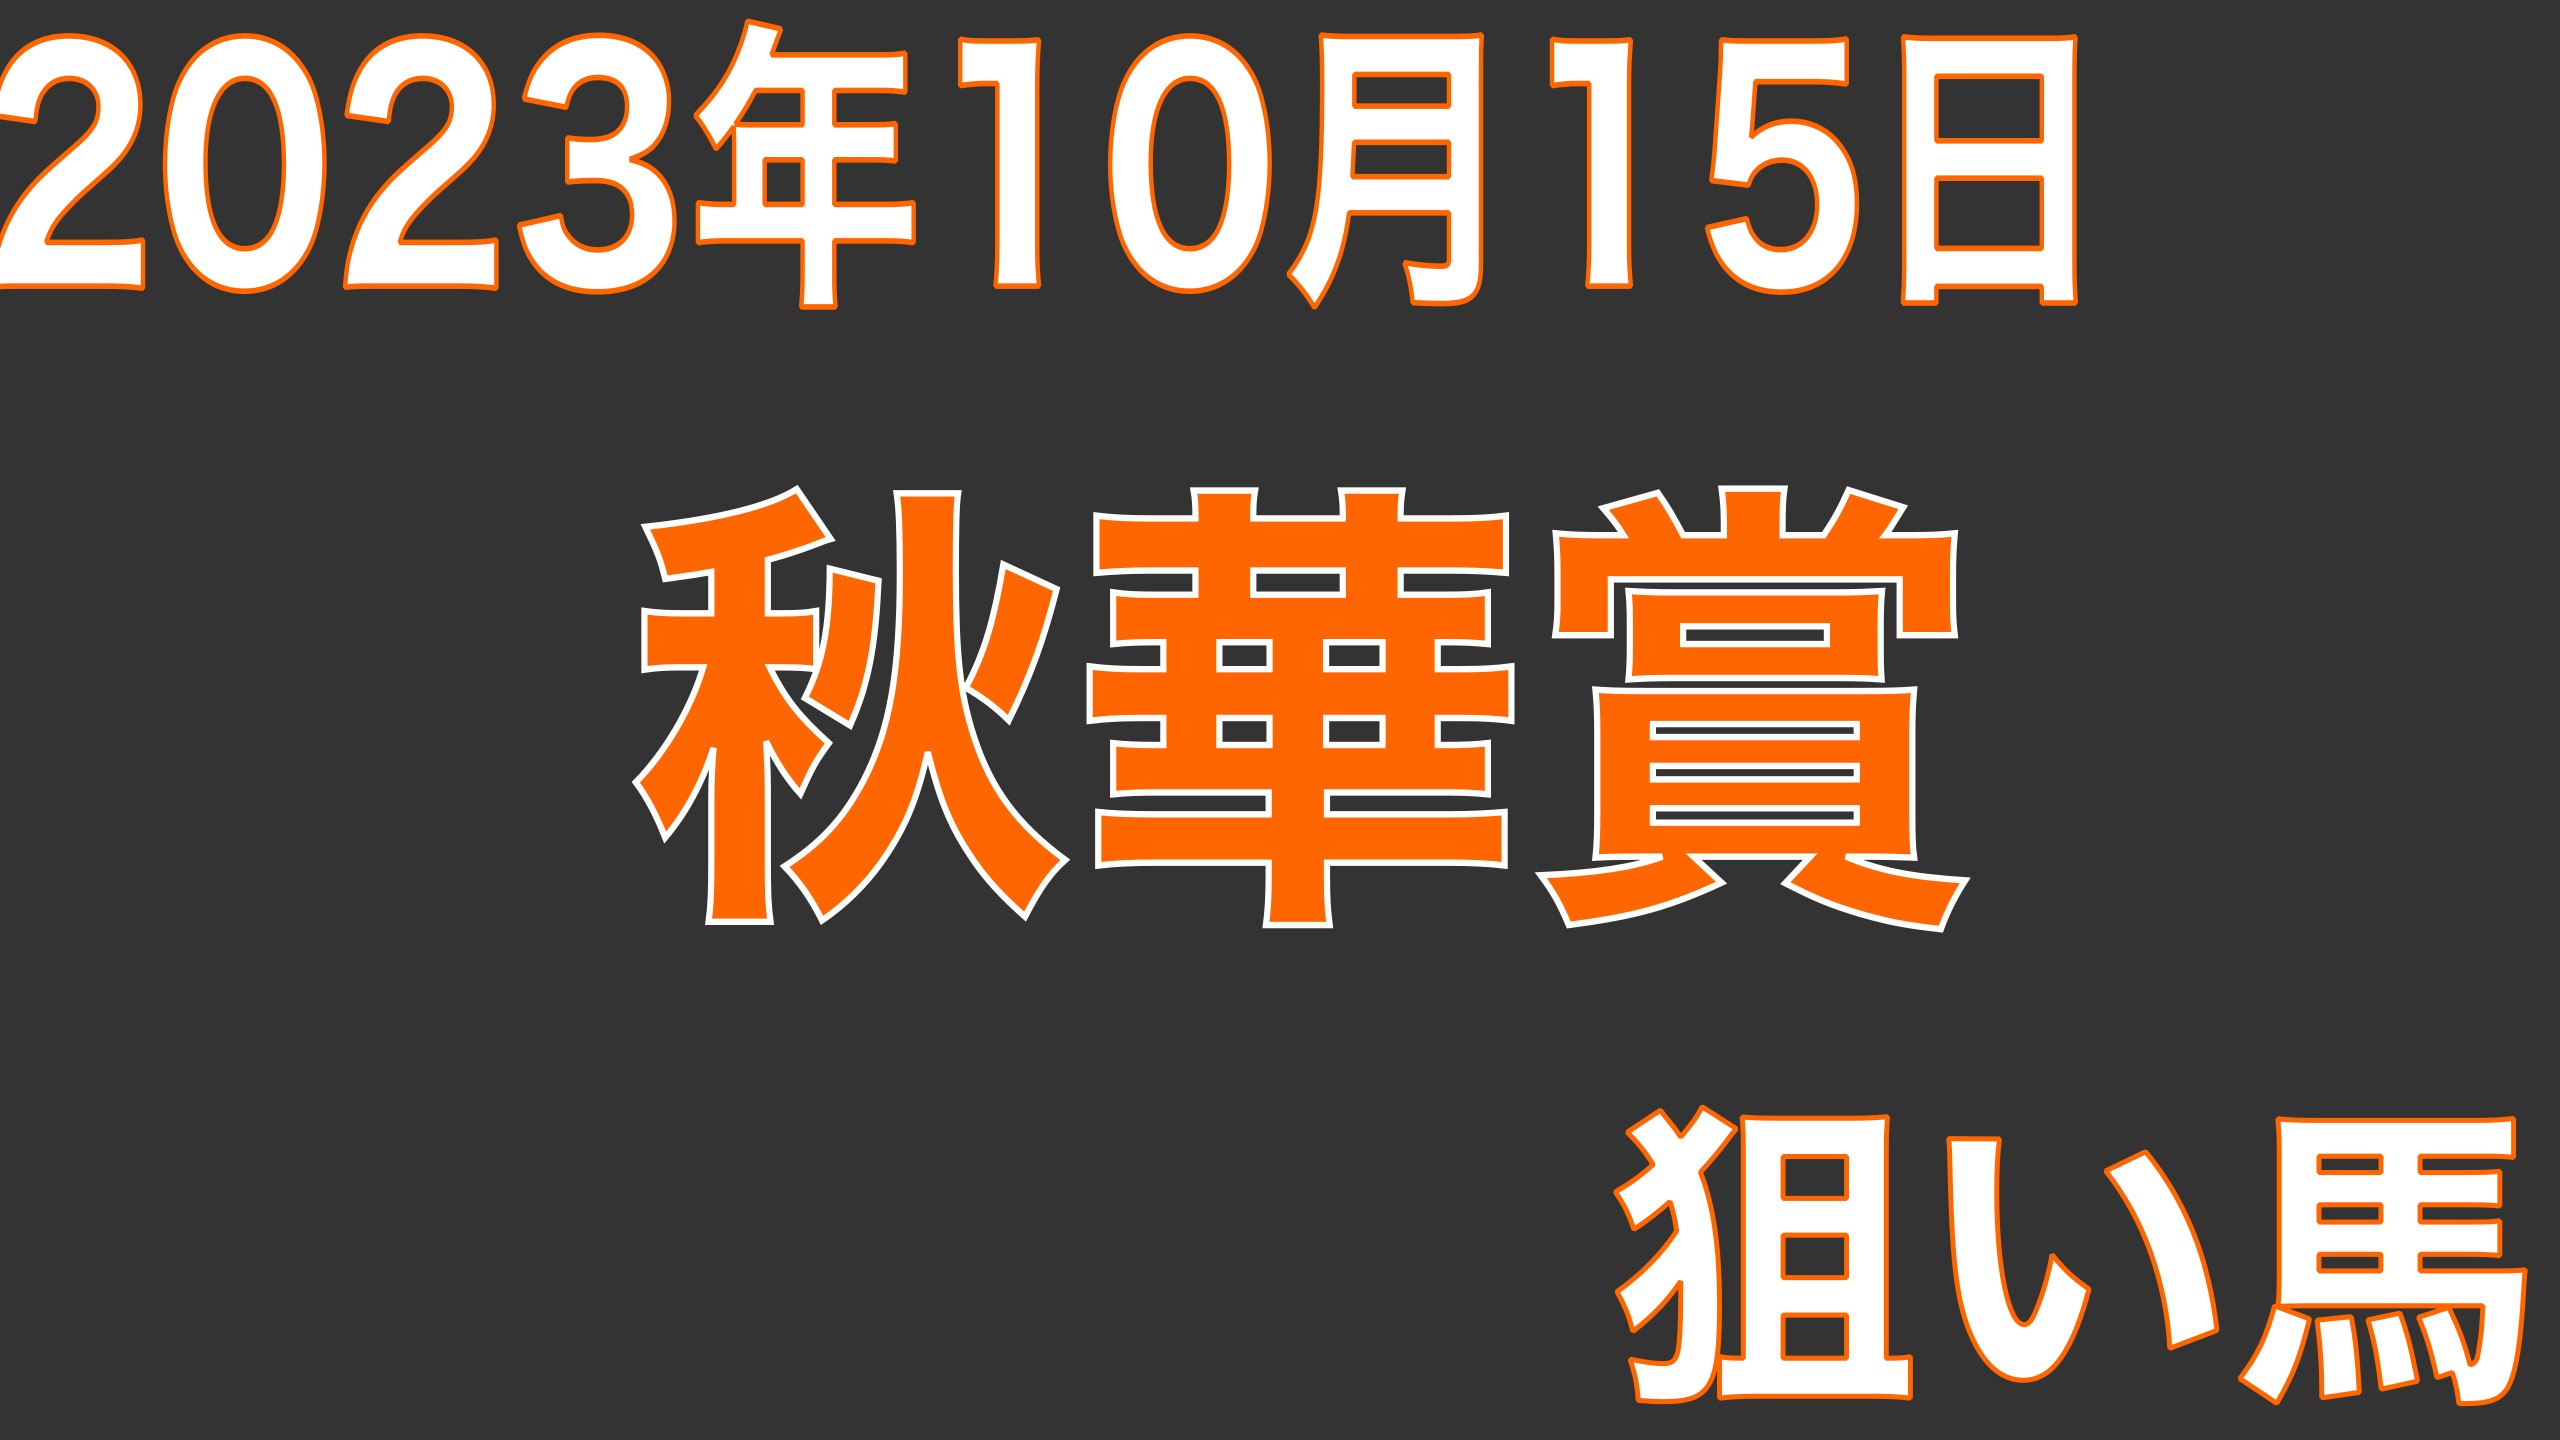 2023年10月15日(日)秋華賞(G1) 狙い馬考察